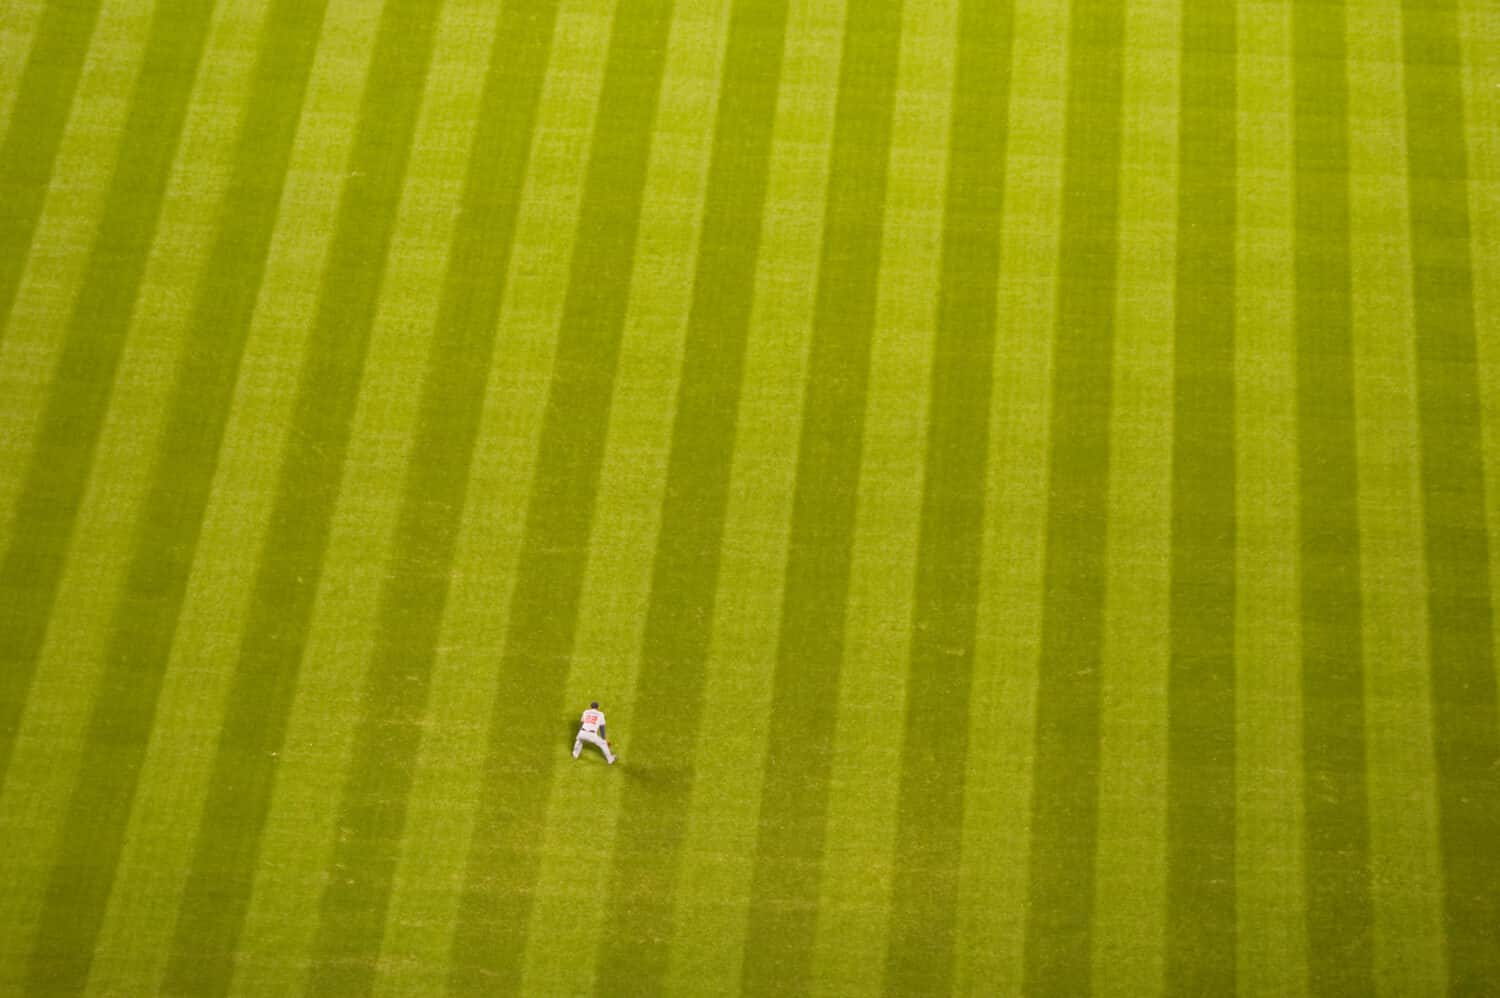 Baseball player on a large baseball field